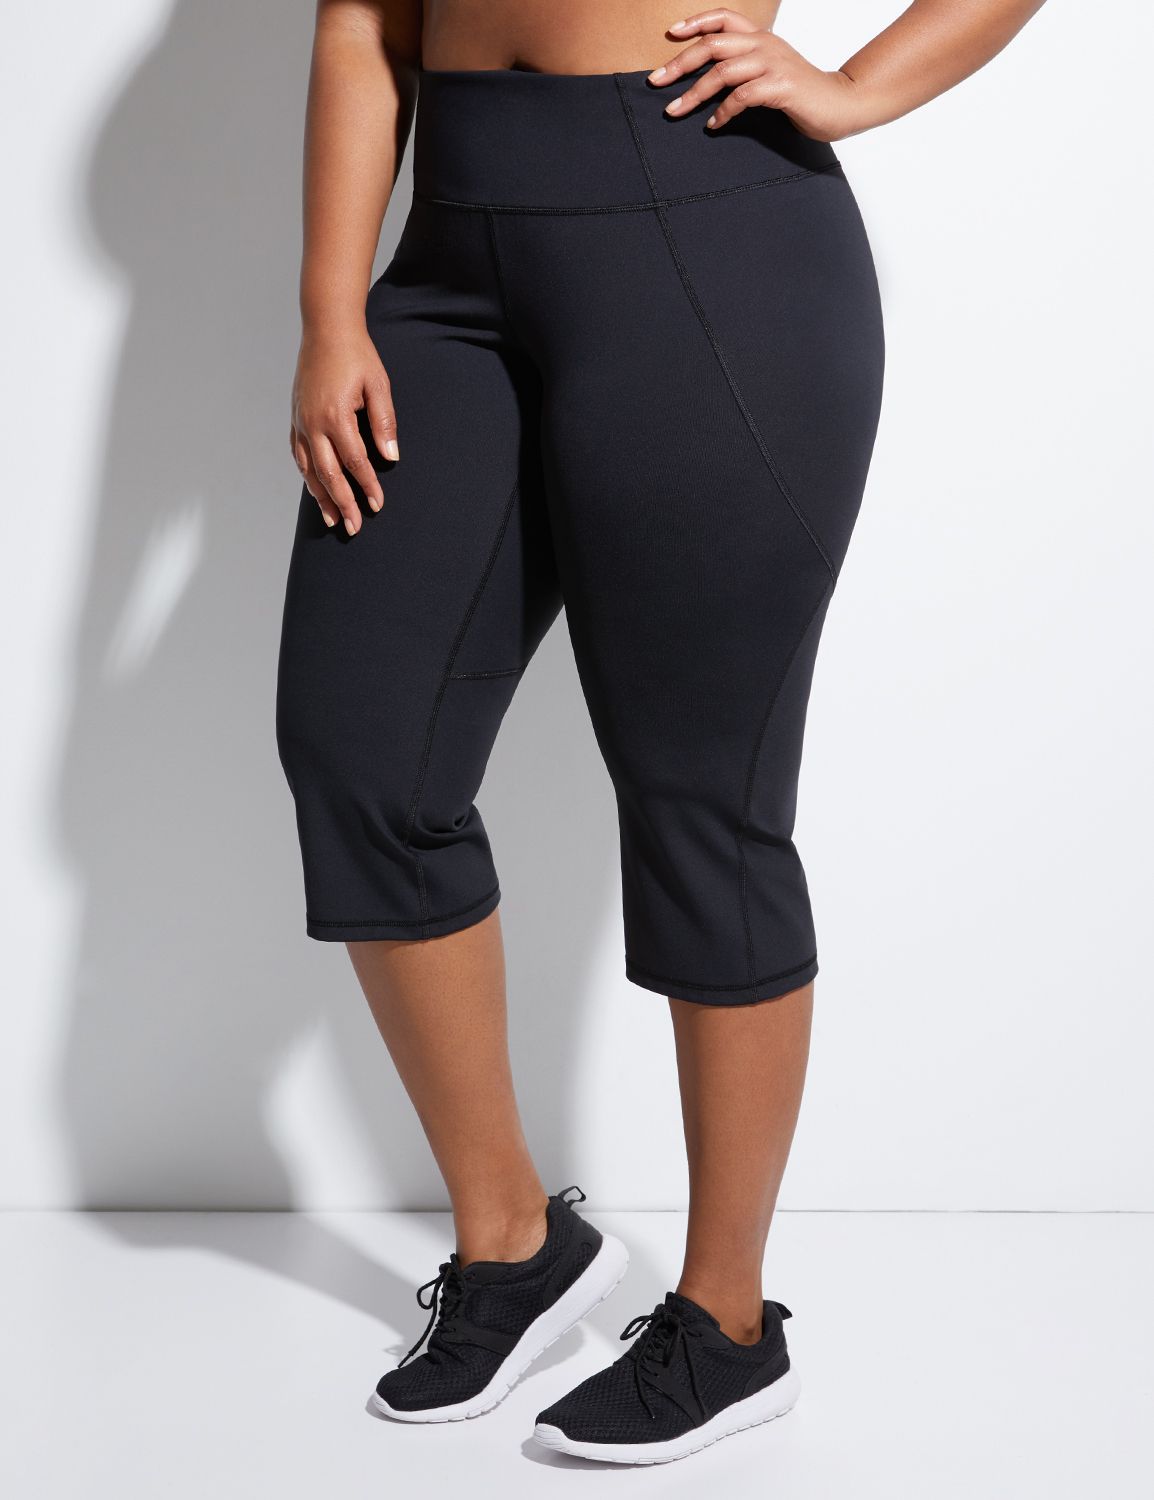 Plus Size Livi Active Workout Pants | Lane Bryant